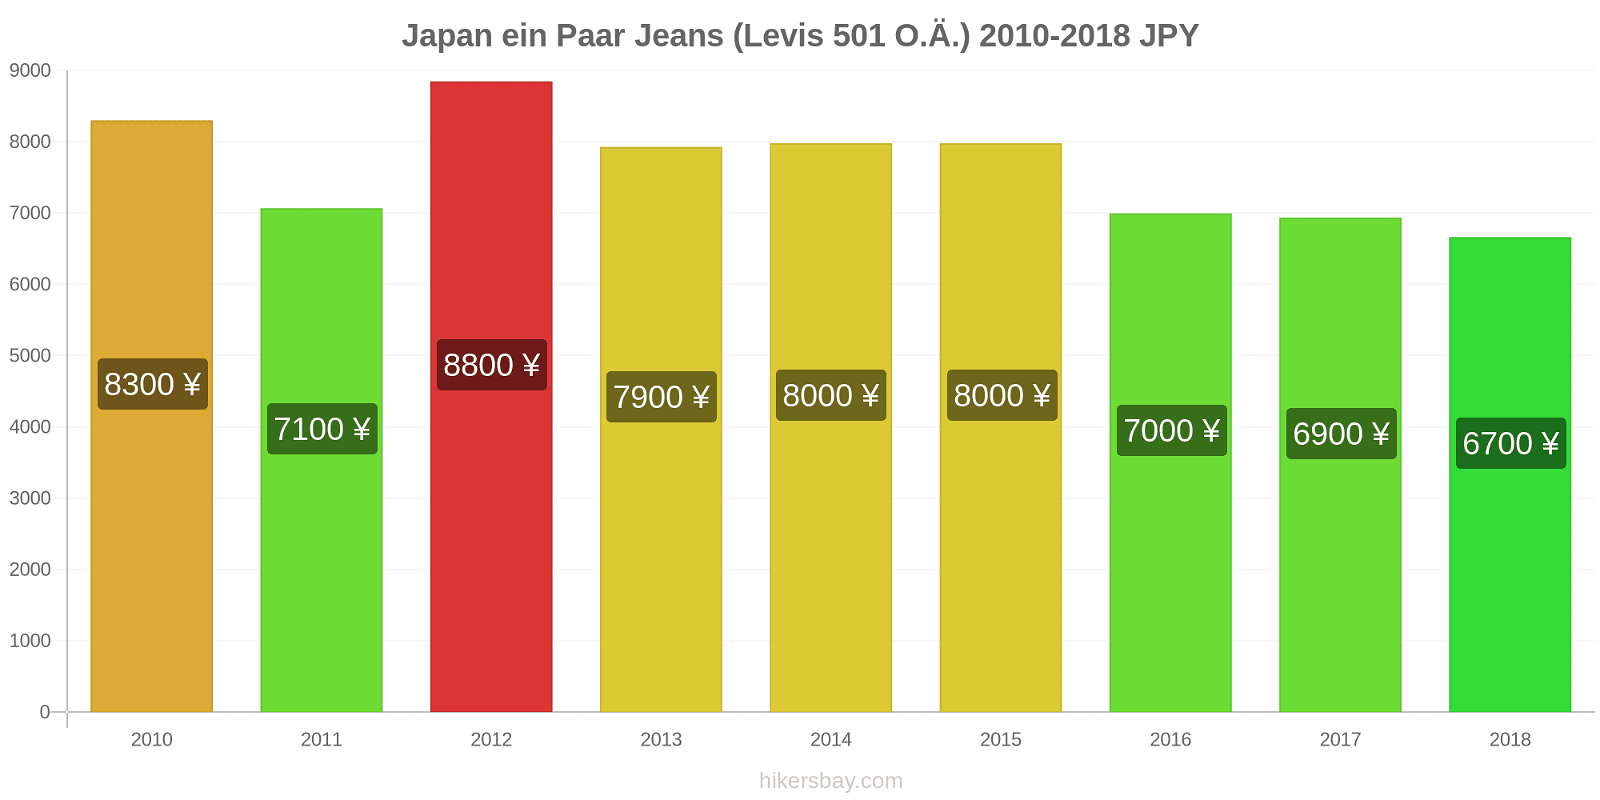 Japan Preisänderungen 1 Paar Jeans (Levis 501 oder ähnlich) hikersbay.com